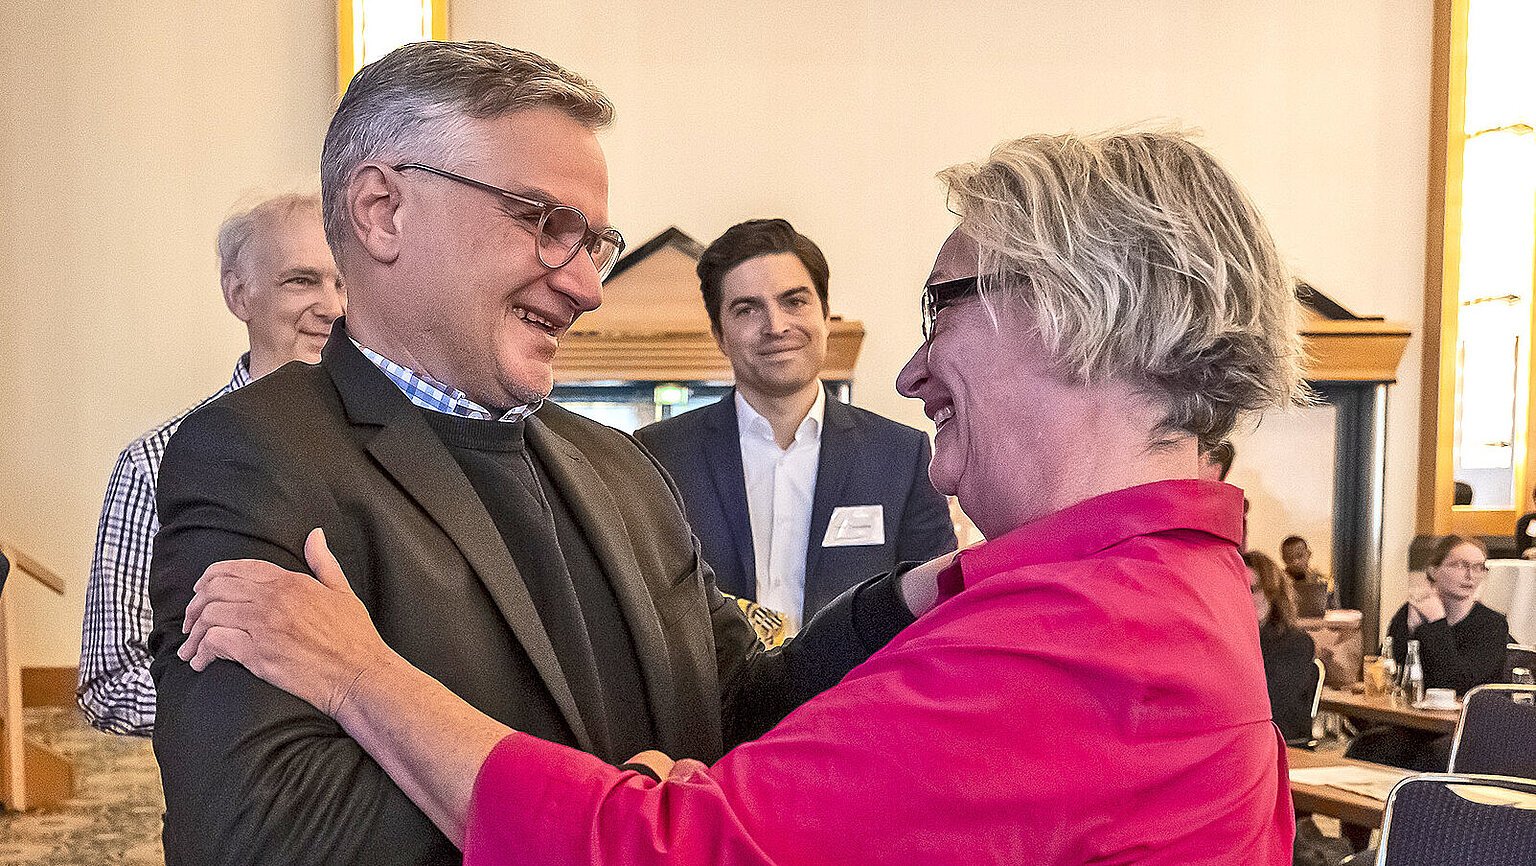  – Harald Stocker gratuliert Anne Webert zur Wahl.